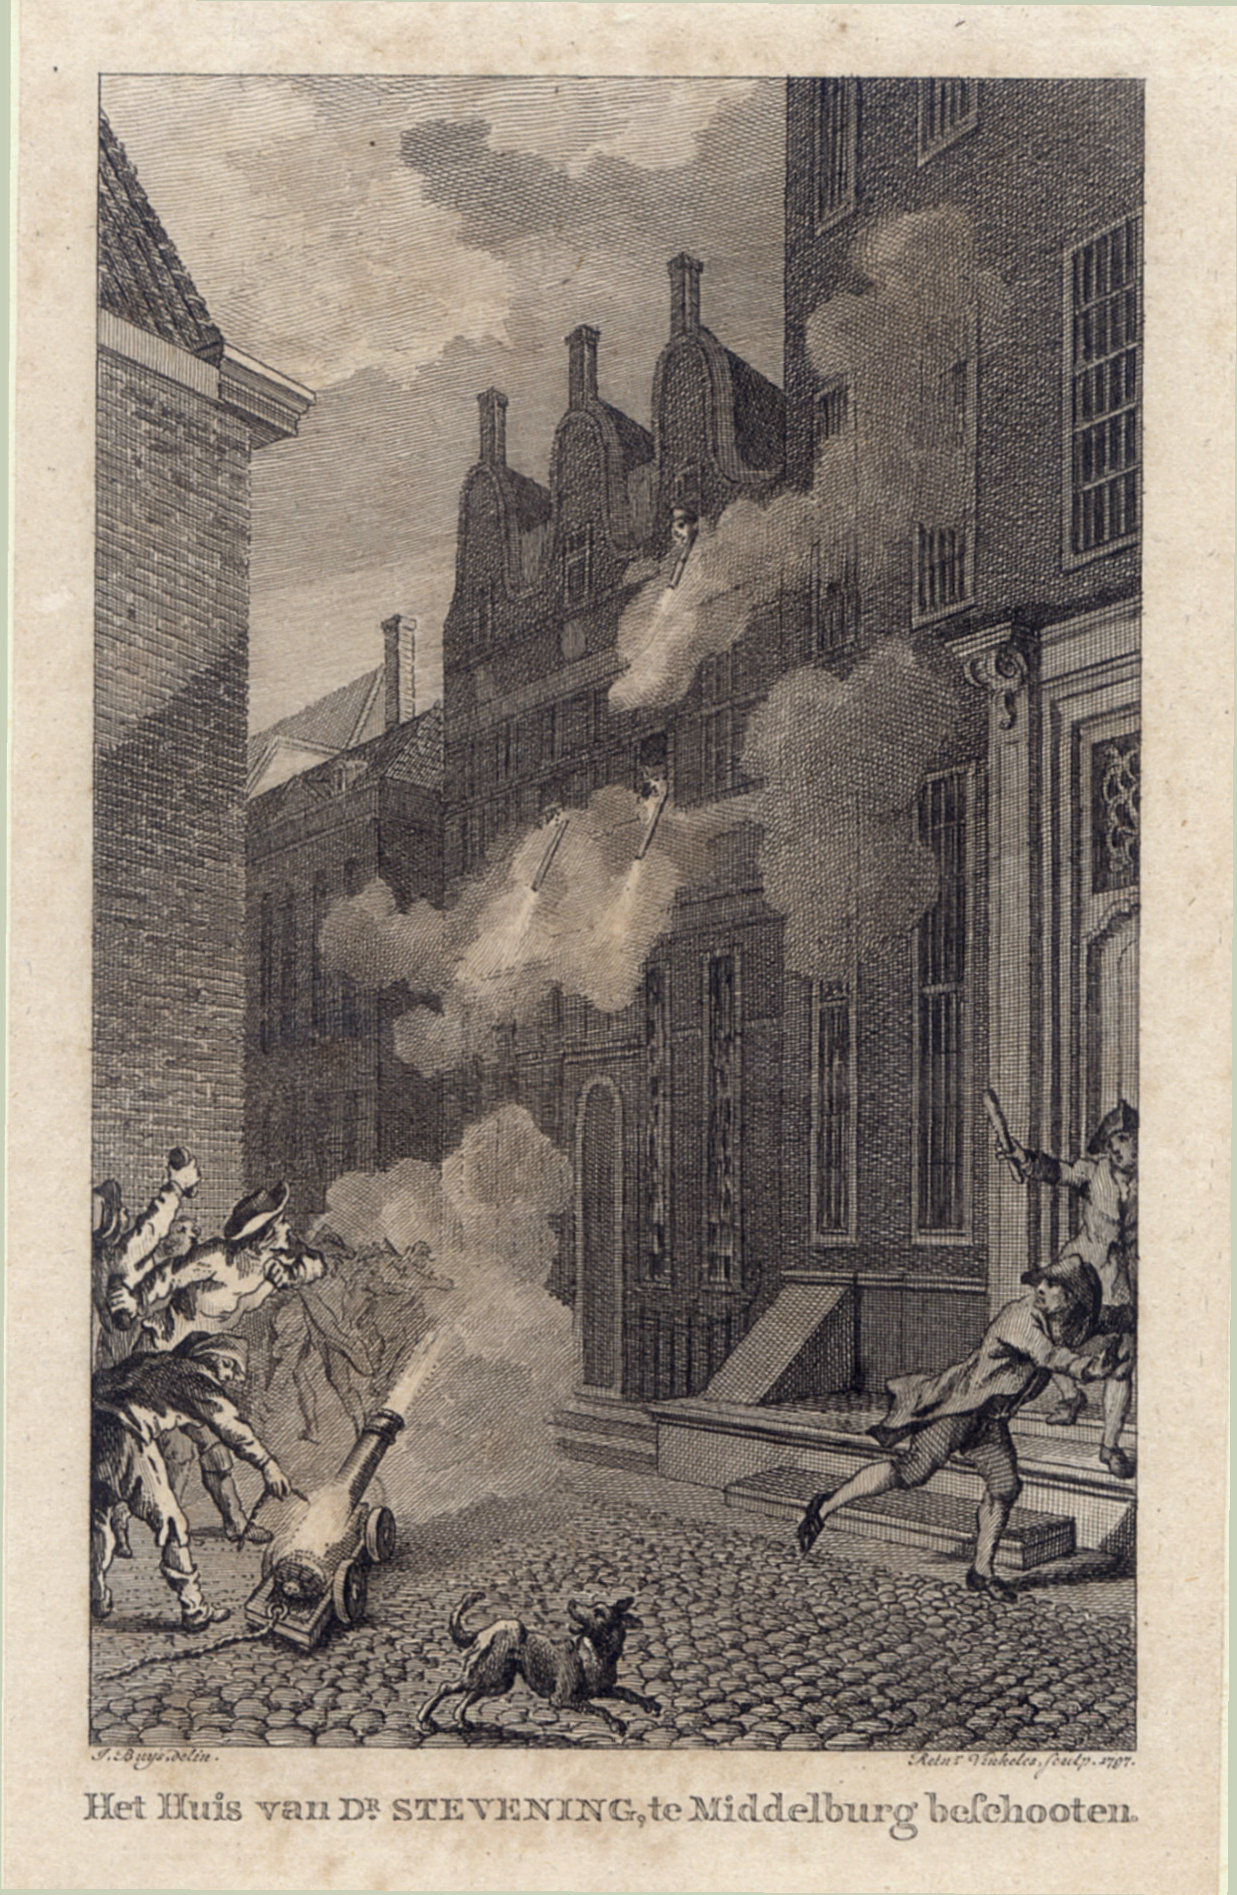 Beschieting van het huis van dominee Stevening te Middelburg, 1787.